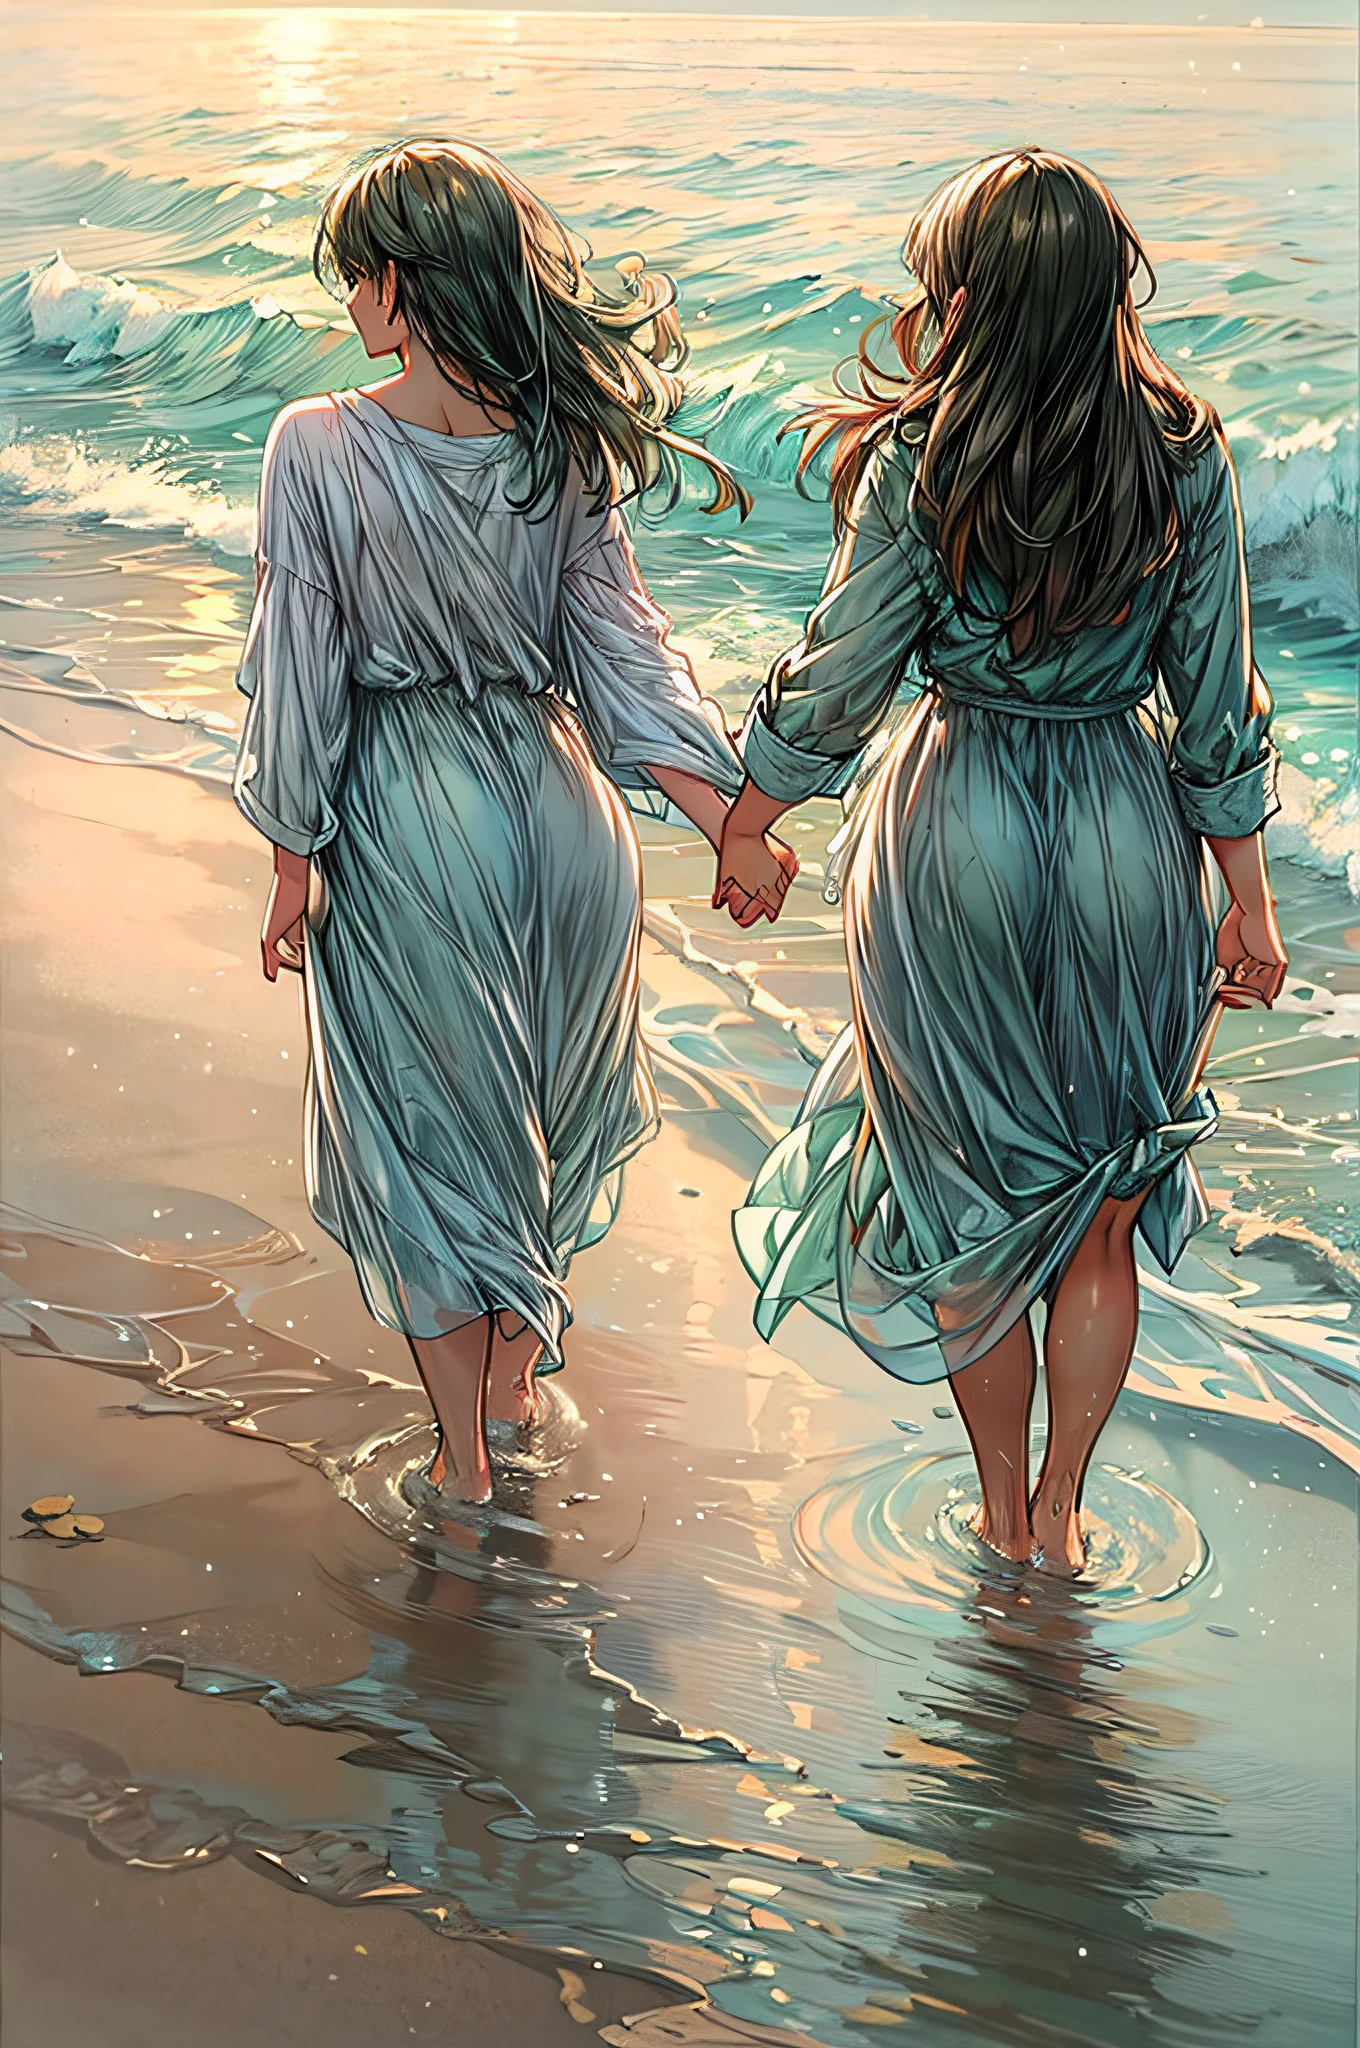 An einem mondbeschienenen Strand, zwei Frauen gehen Hand in Hand entlang der Küste, die Wellen plätschern sanft an ihre nackten Füße. Das silbrige Licht spiegelt sich im Wasser, ein romantischer Glanz auf ihre Gesichter. Mit den funkelnden Sternen am Himmel und dem fernen Klang der brechenden Wellen, Ihre Lippen treffen sich in einem zärtlichen Kuss voller Sehnsucht und Verbundenheit. Die salzige Brise trägt ihr Lachen und den Duft des Meeres, umhüllt sie mit einem heiteren und leidenschaftlichen Moment. Die Szene ist verträumt eingefangen, Soft-Fokus-Stil mit Pastellfarben und sanften Pinselstrichen, die zeitlose Natur ihrer Liebe vermitteln.